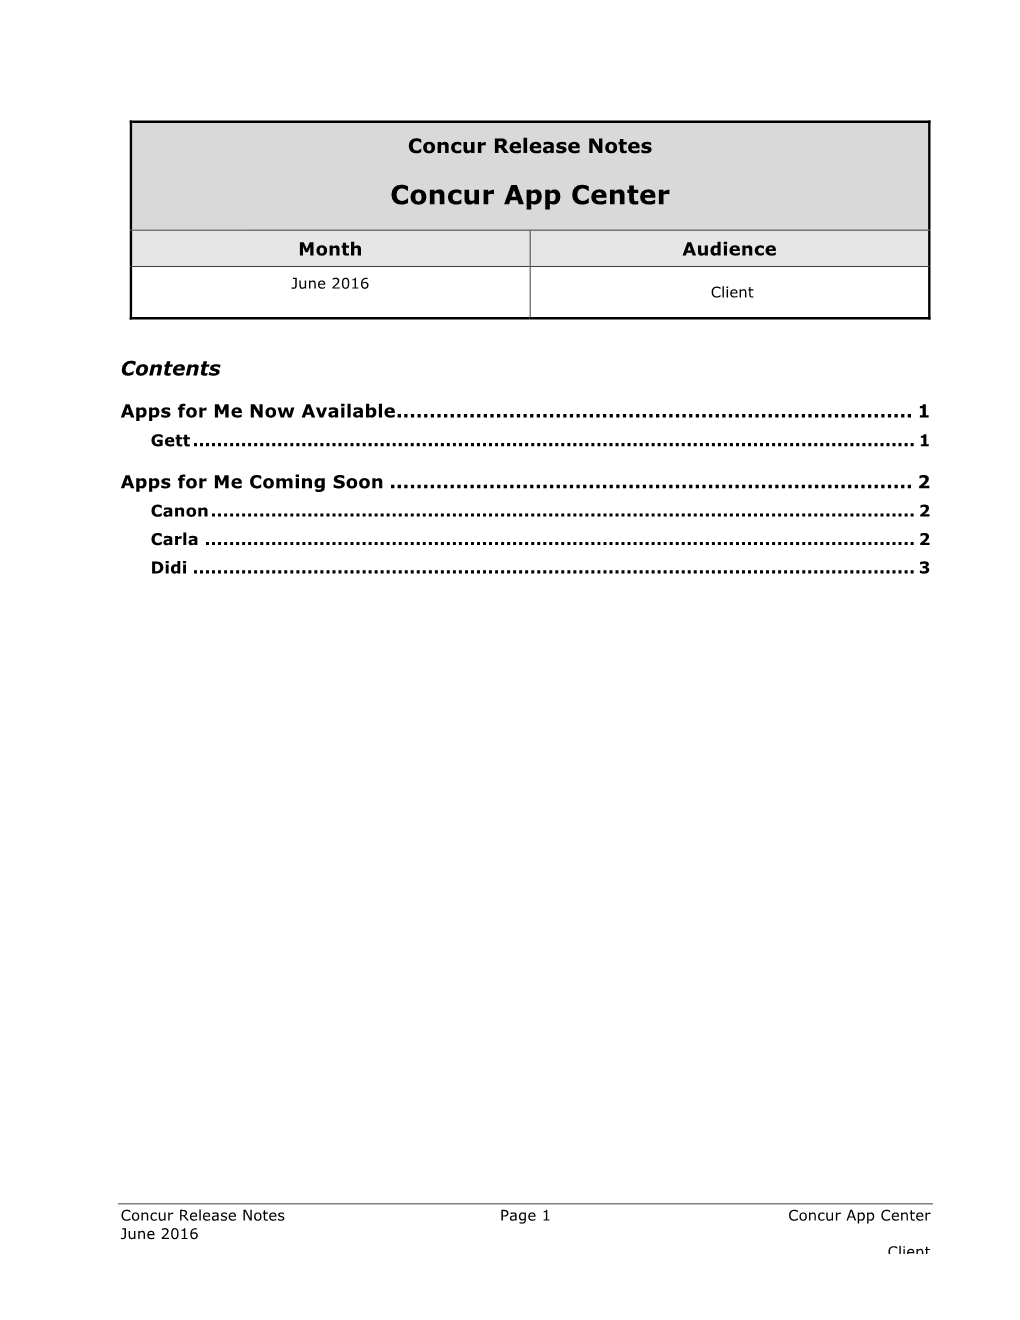 Concur App Center